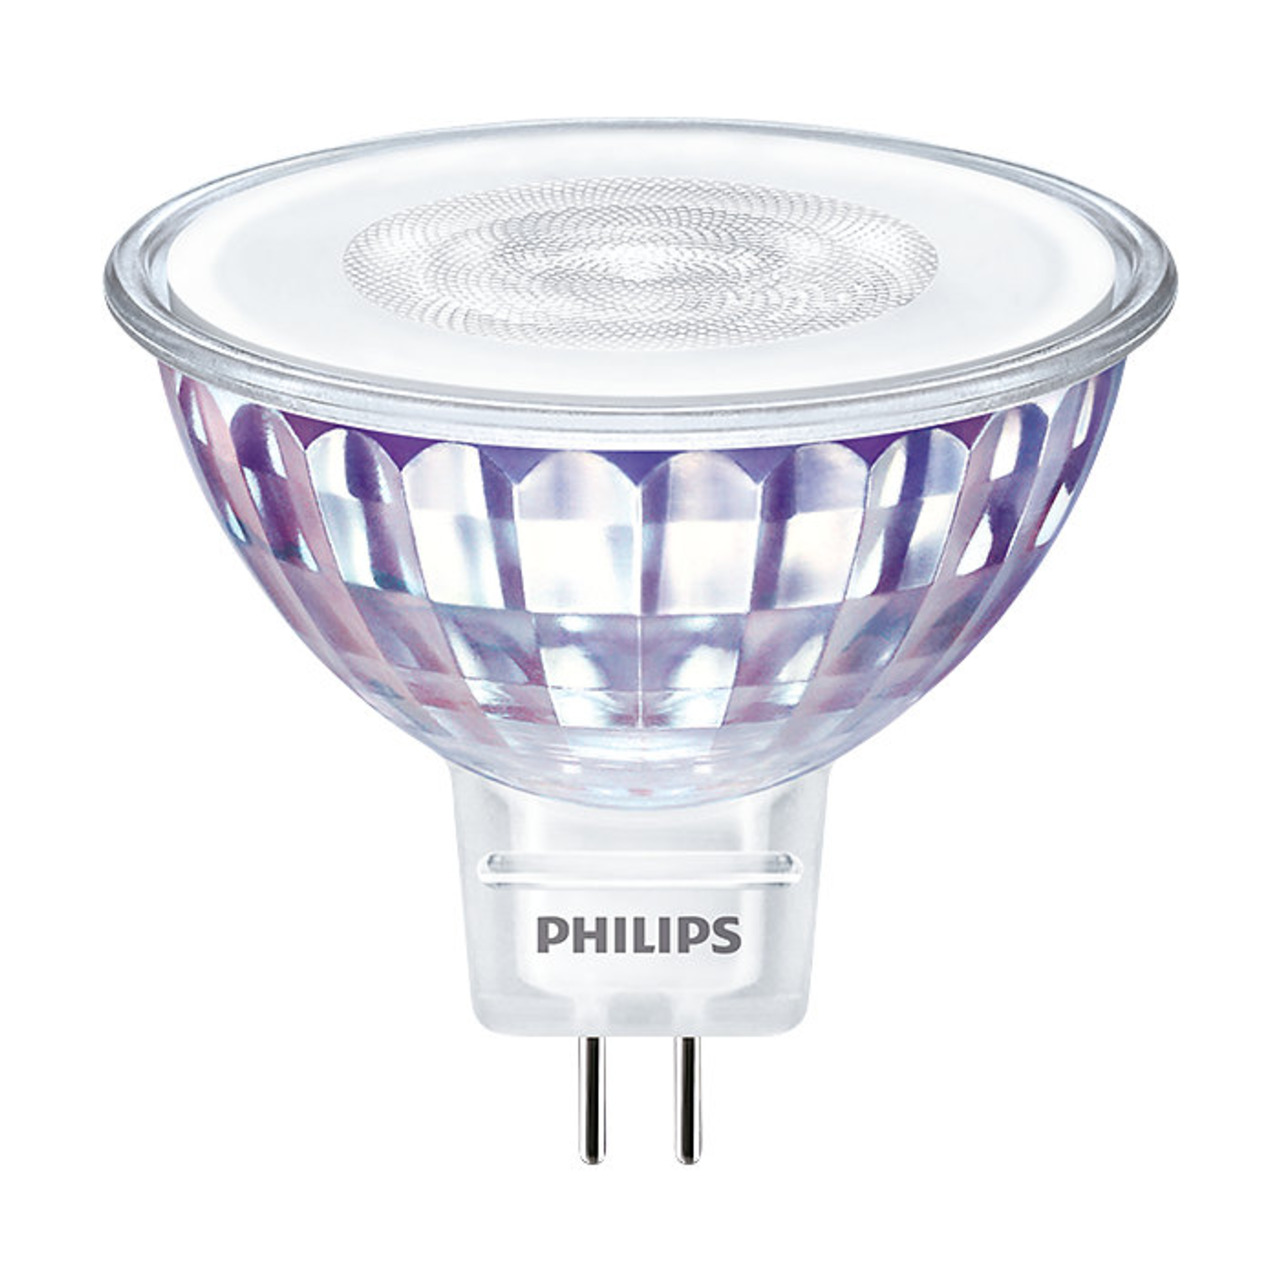 Philips 5-8-W-GU5-3-LED-Lampe Master LEDspot Value- MR16- 490 lm- neutralweiss (4000 K)- 36- dimmbar unter Beleuchtung